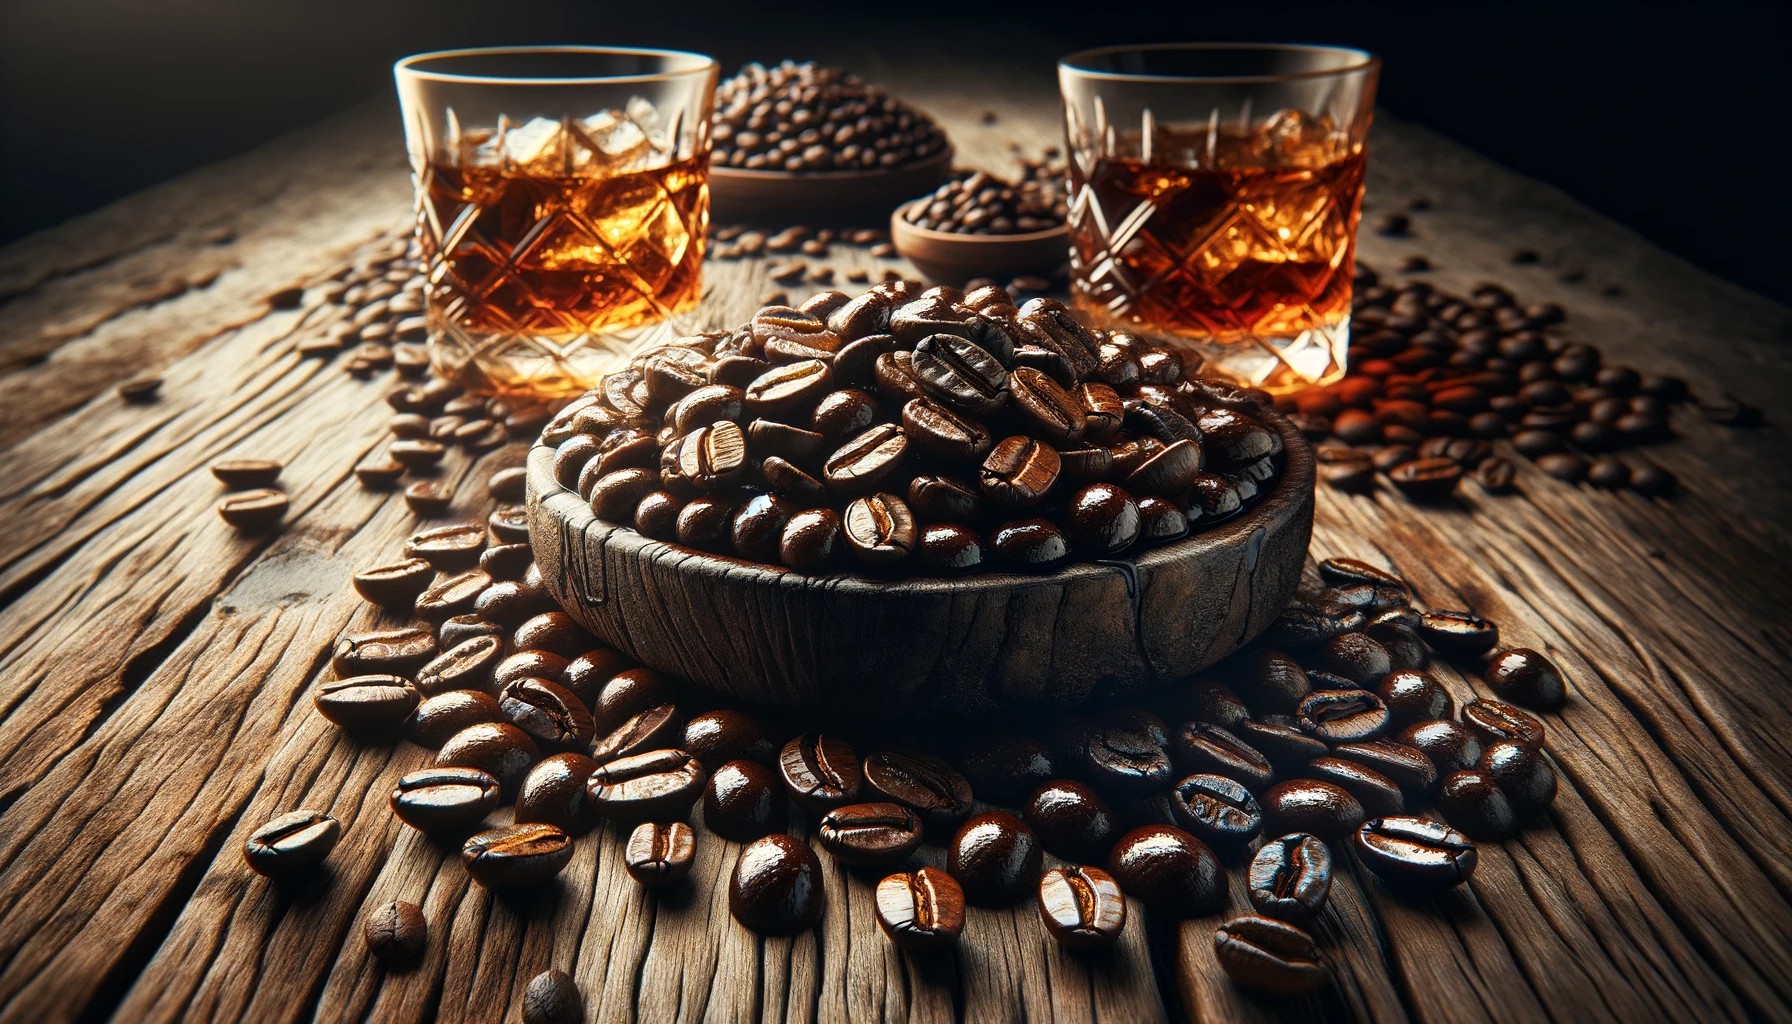 義式咖啡 冷萃咖啡 烘焙曲線 阿拉比卡 羅布斯塔 中焙 濃縮咖啡 Italian Coffee Cold Brew Roast Profile Arabica Robusta Medium Roast Espresso